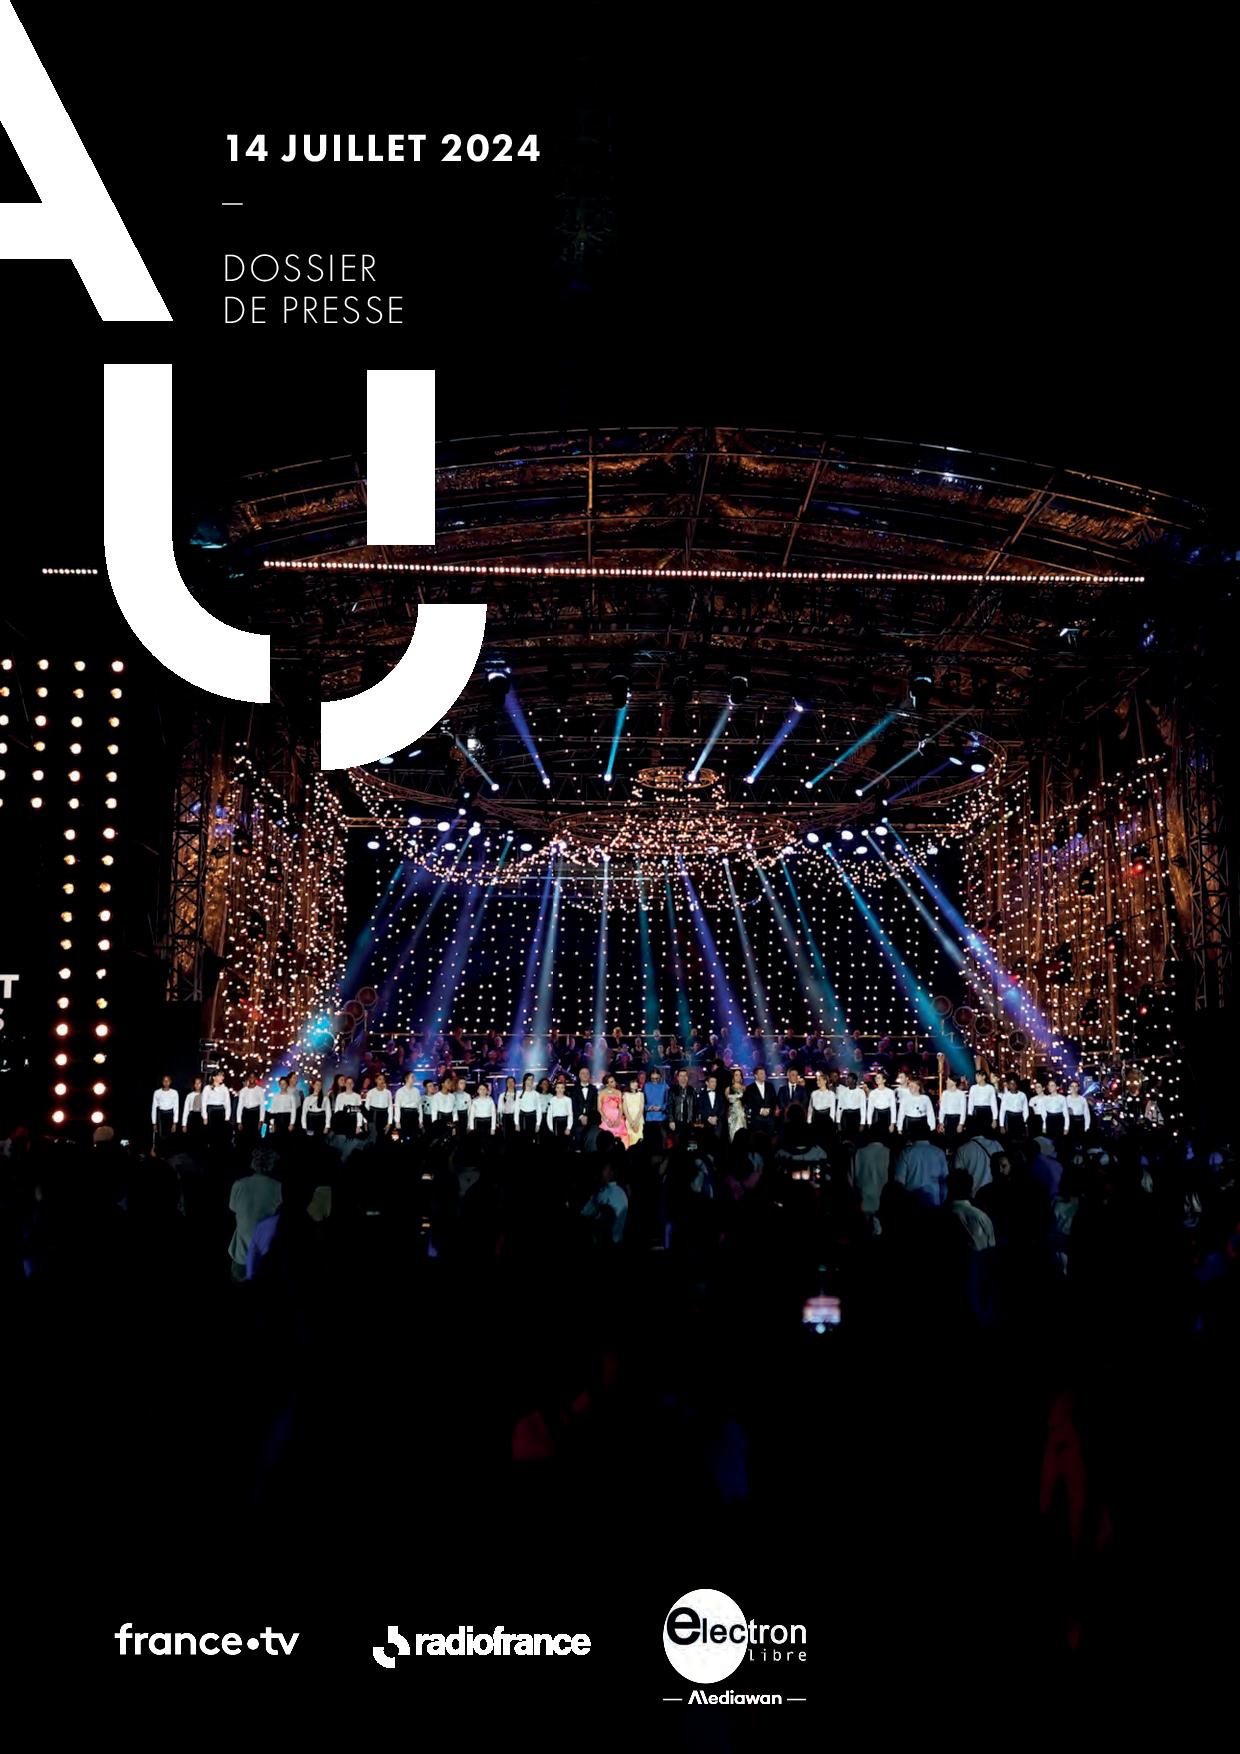 Dossier de presse du concert de Paris du 14 juillet 2024